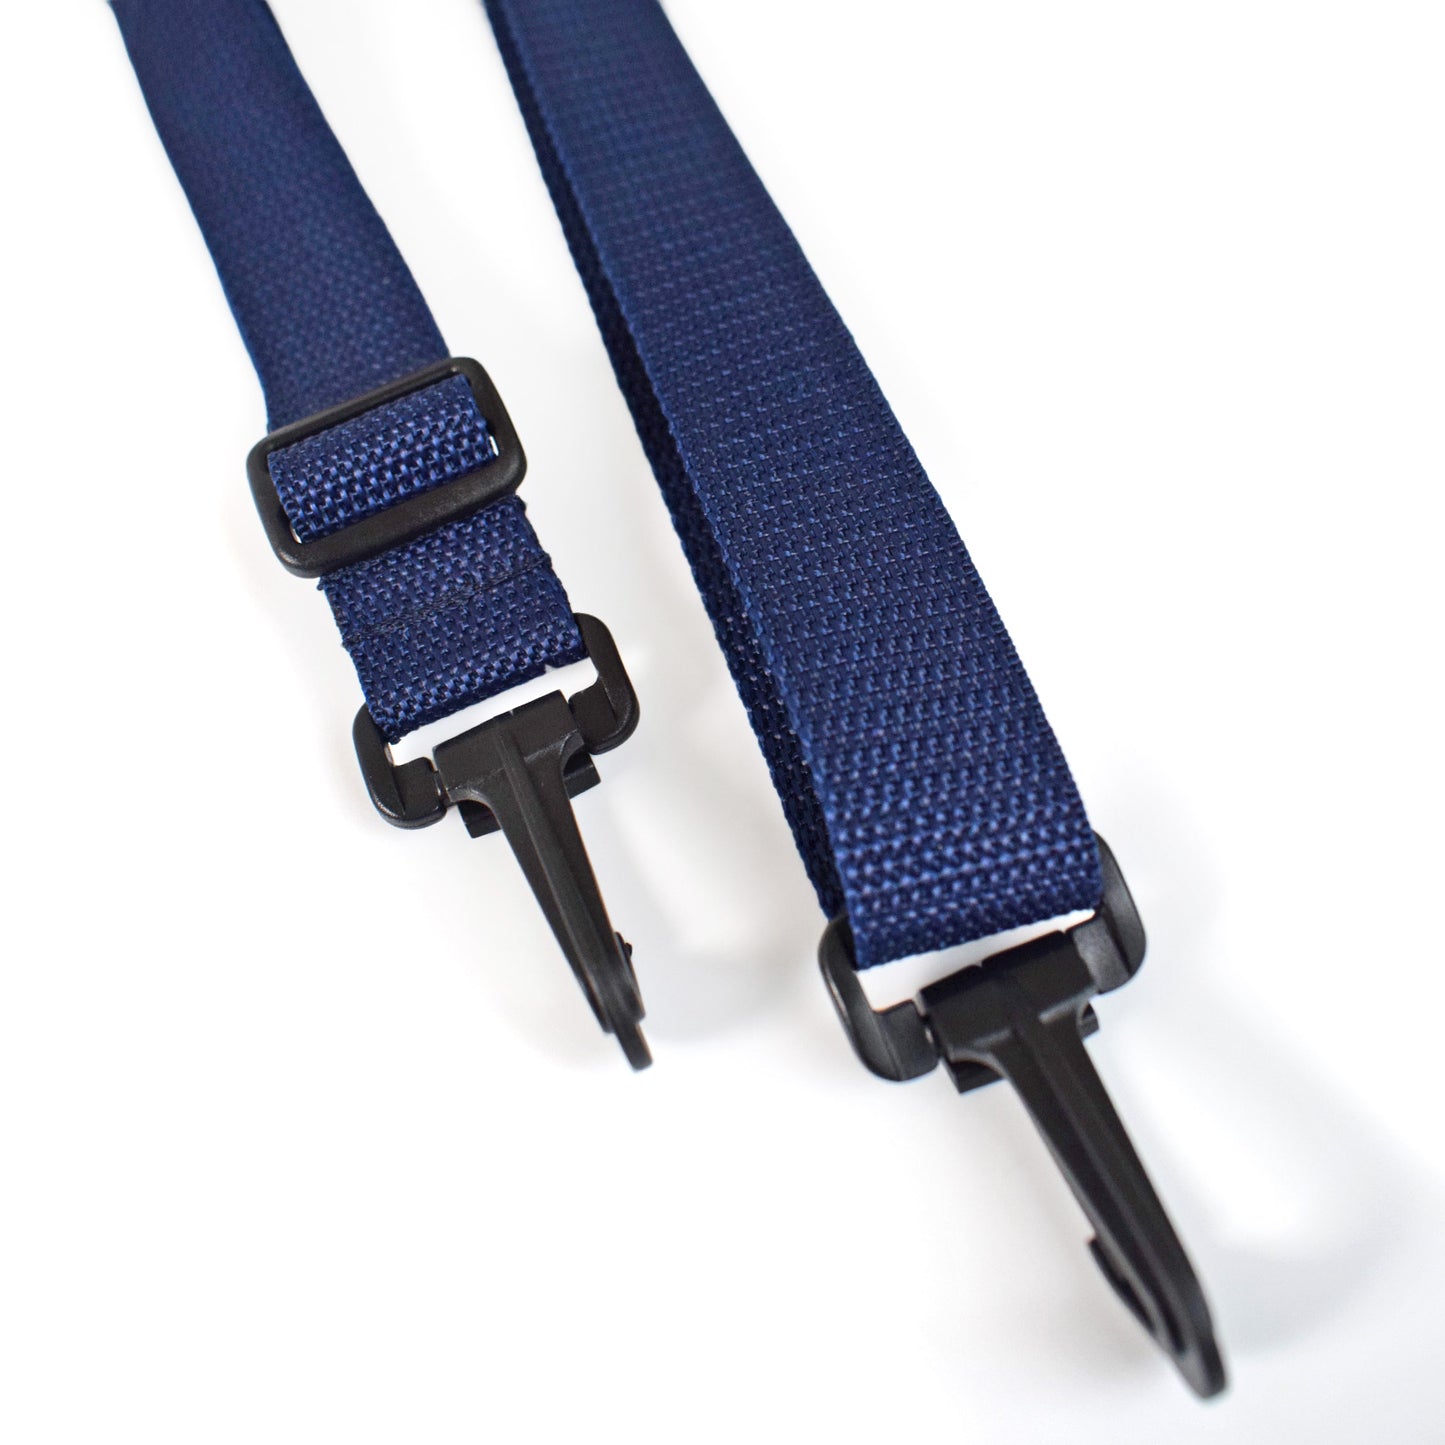 Adjustable Shoulder Strap 25mm NAVY BLUE